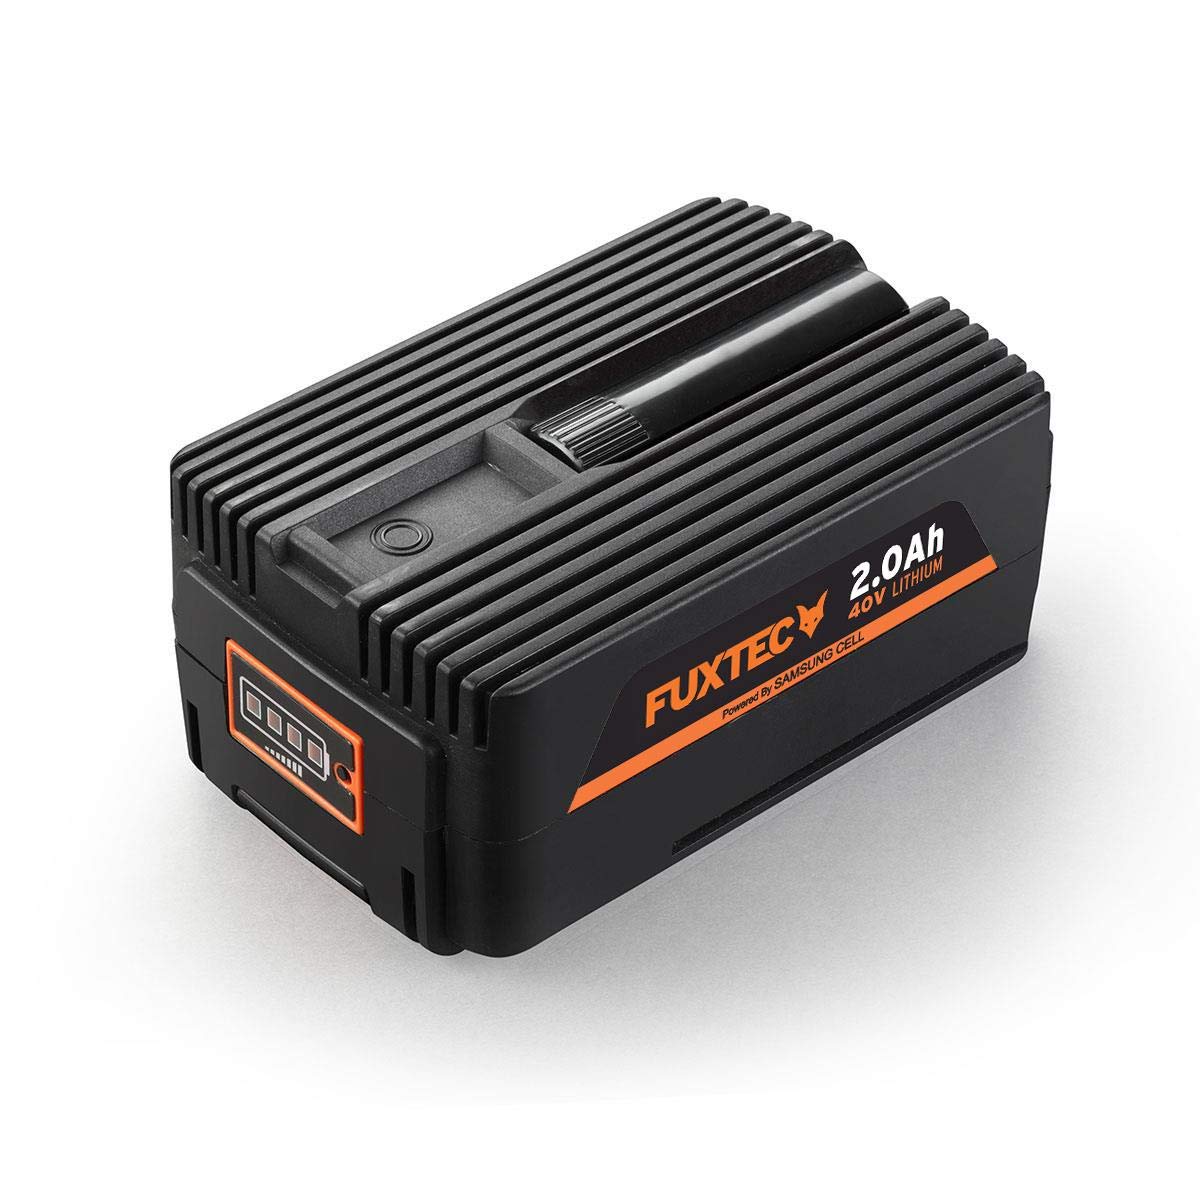 FUXTEC 40V 2Ah Akku Batterie EP20 Lithium Ionen Liforce Batteriezellen - extrem belastbar bei geringstem Energieverlust; Kapazität: 2.0Ah (80Wh); Kein Ladeverlust bei längerer Nicht-Nutzung!